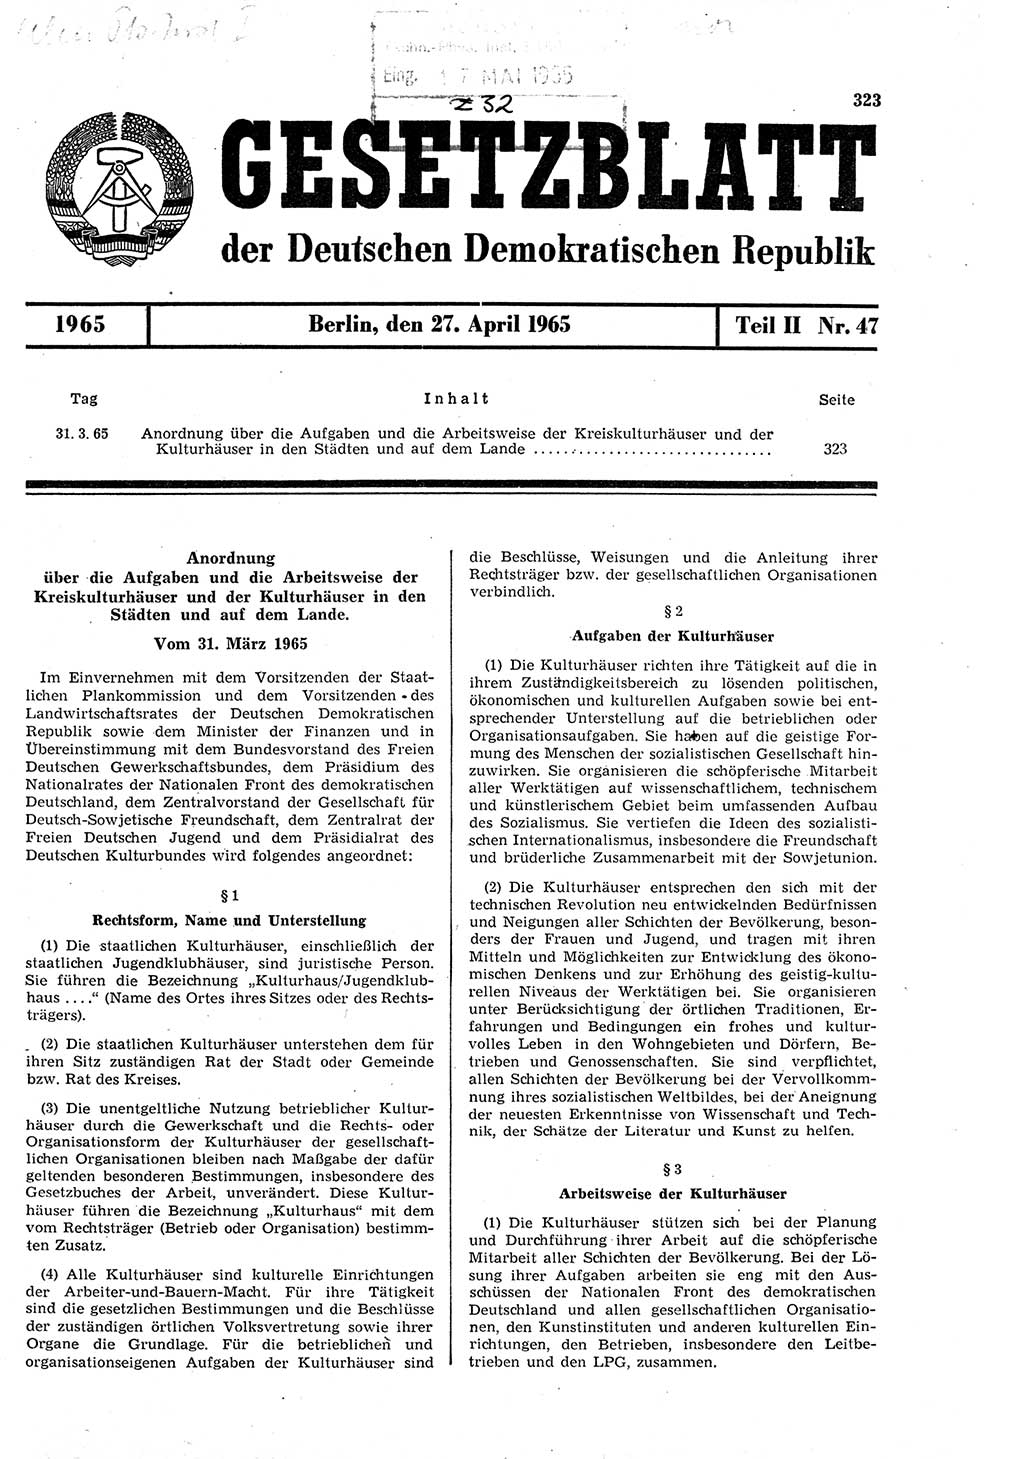 Gesetzblatt (GBl.) der Deutschen Demokratischen Republik (DDR) Teil ⅠⅠ 1965, Seite 323 (GBl. DDR ⅠⅠ 1965, S. 323)